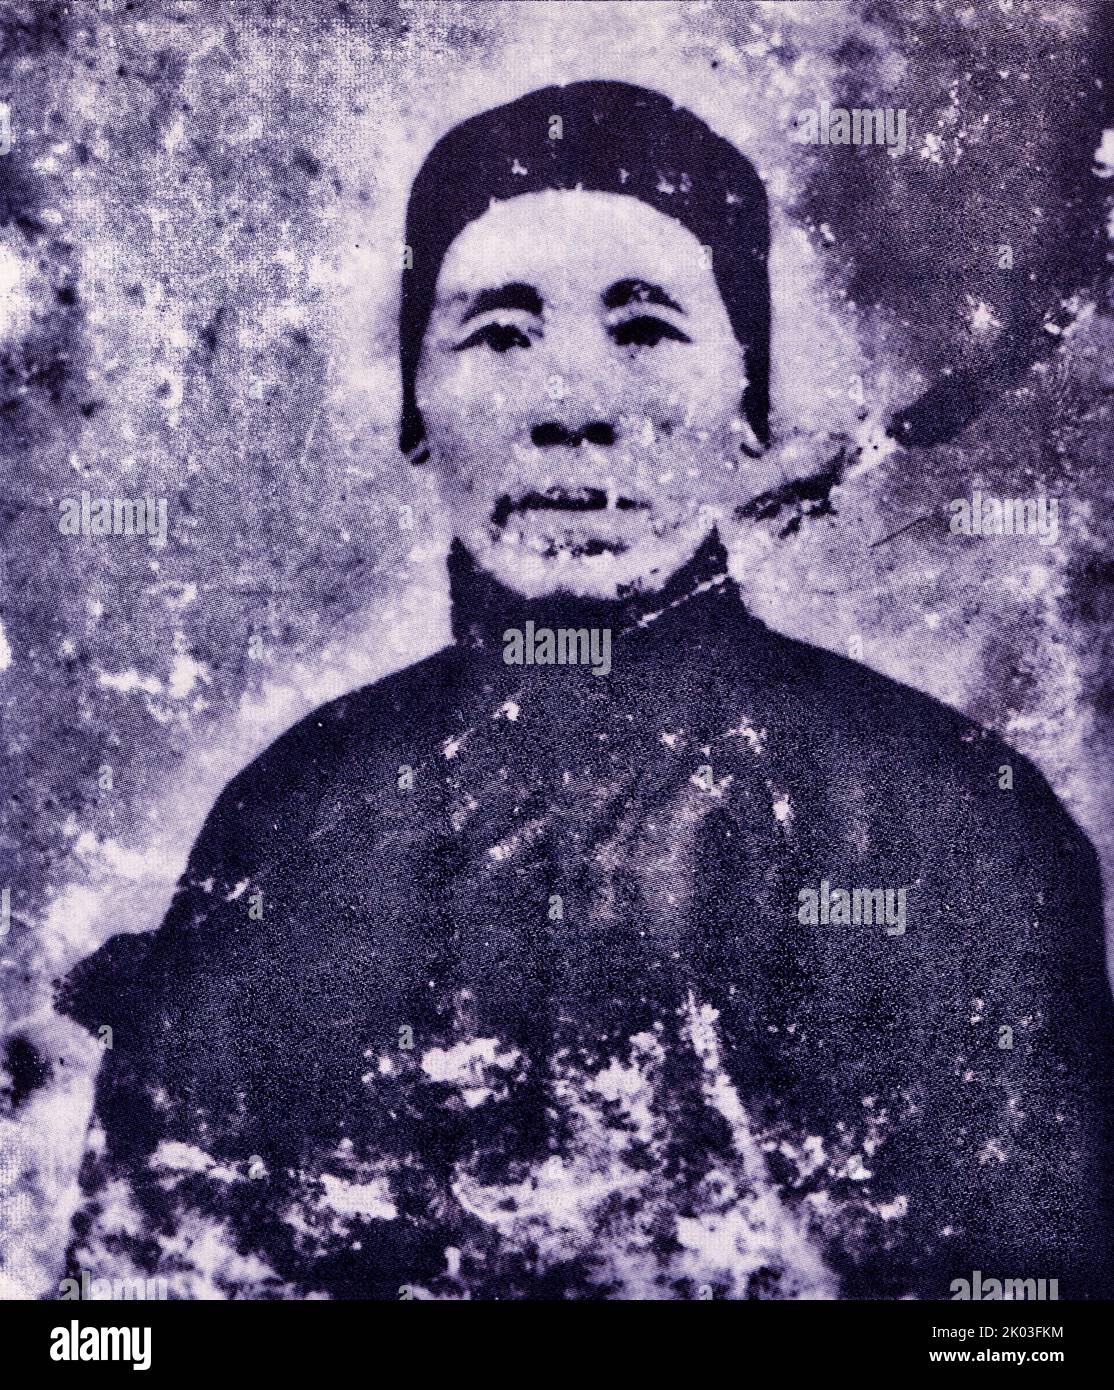 La madre di Ren Bishi, Zhu Shi, nacque nel 1877 e morì nel 1938. Era una donna frulla, semplice e saggia. Ren Bishi era un leader militare e politico nel primo Partito comunista cinese. Nei primi anni '1930s, Foto Stock